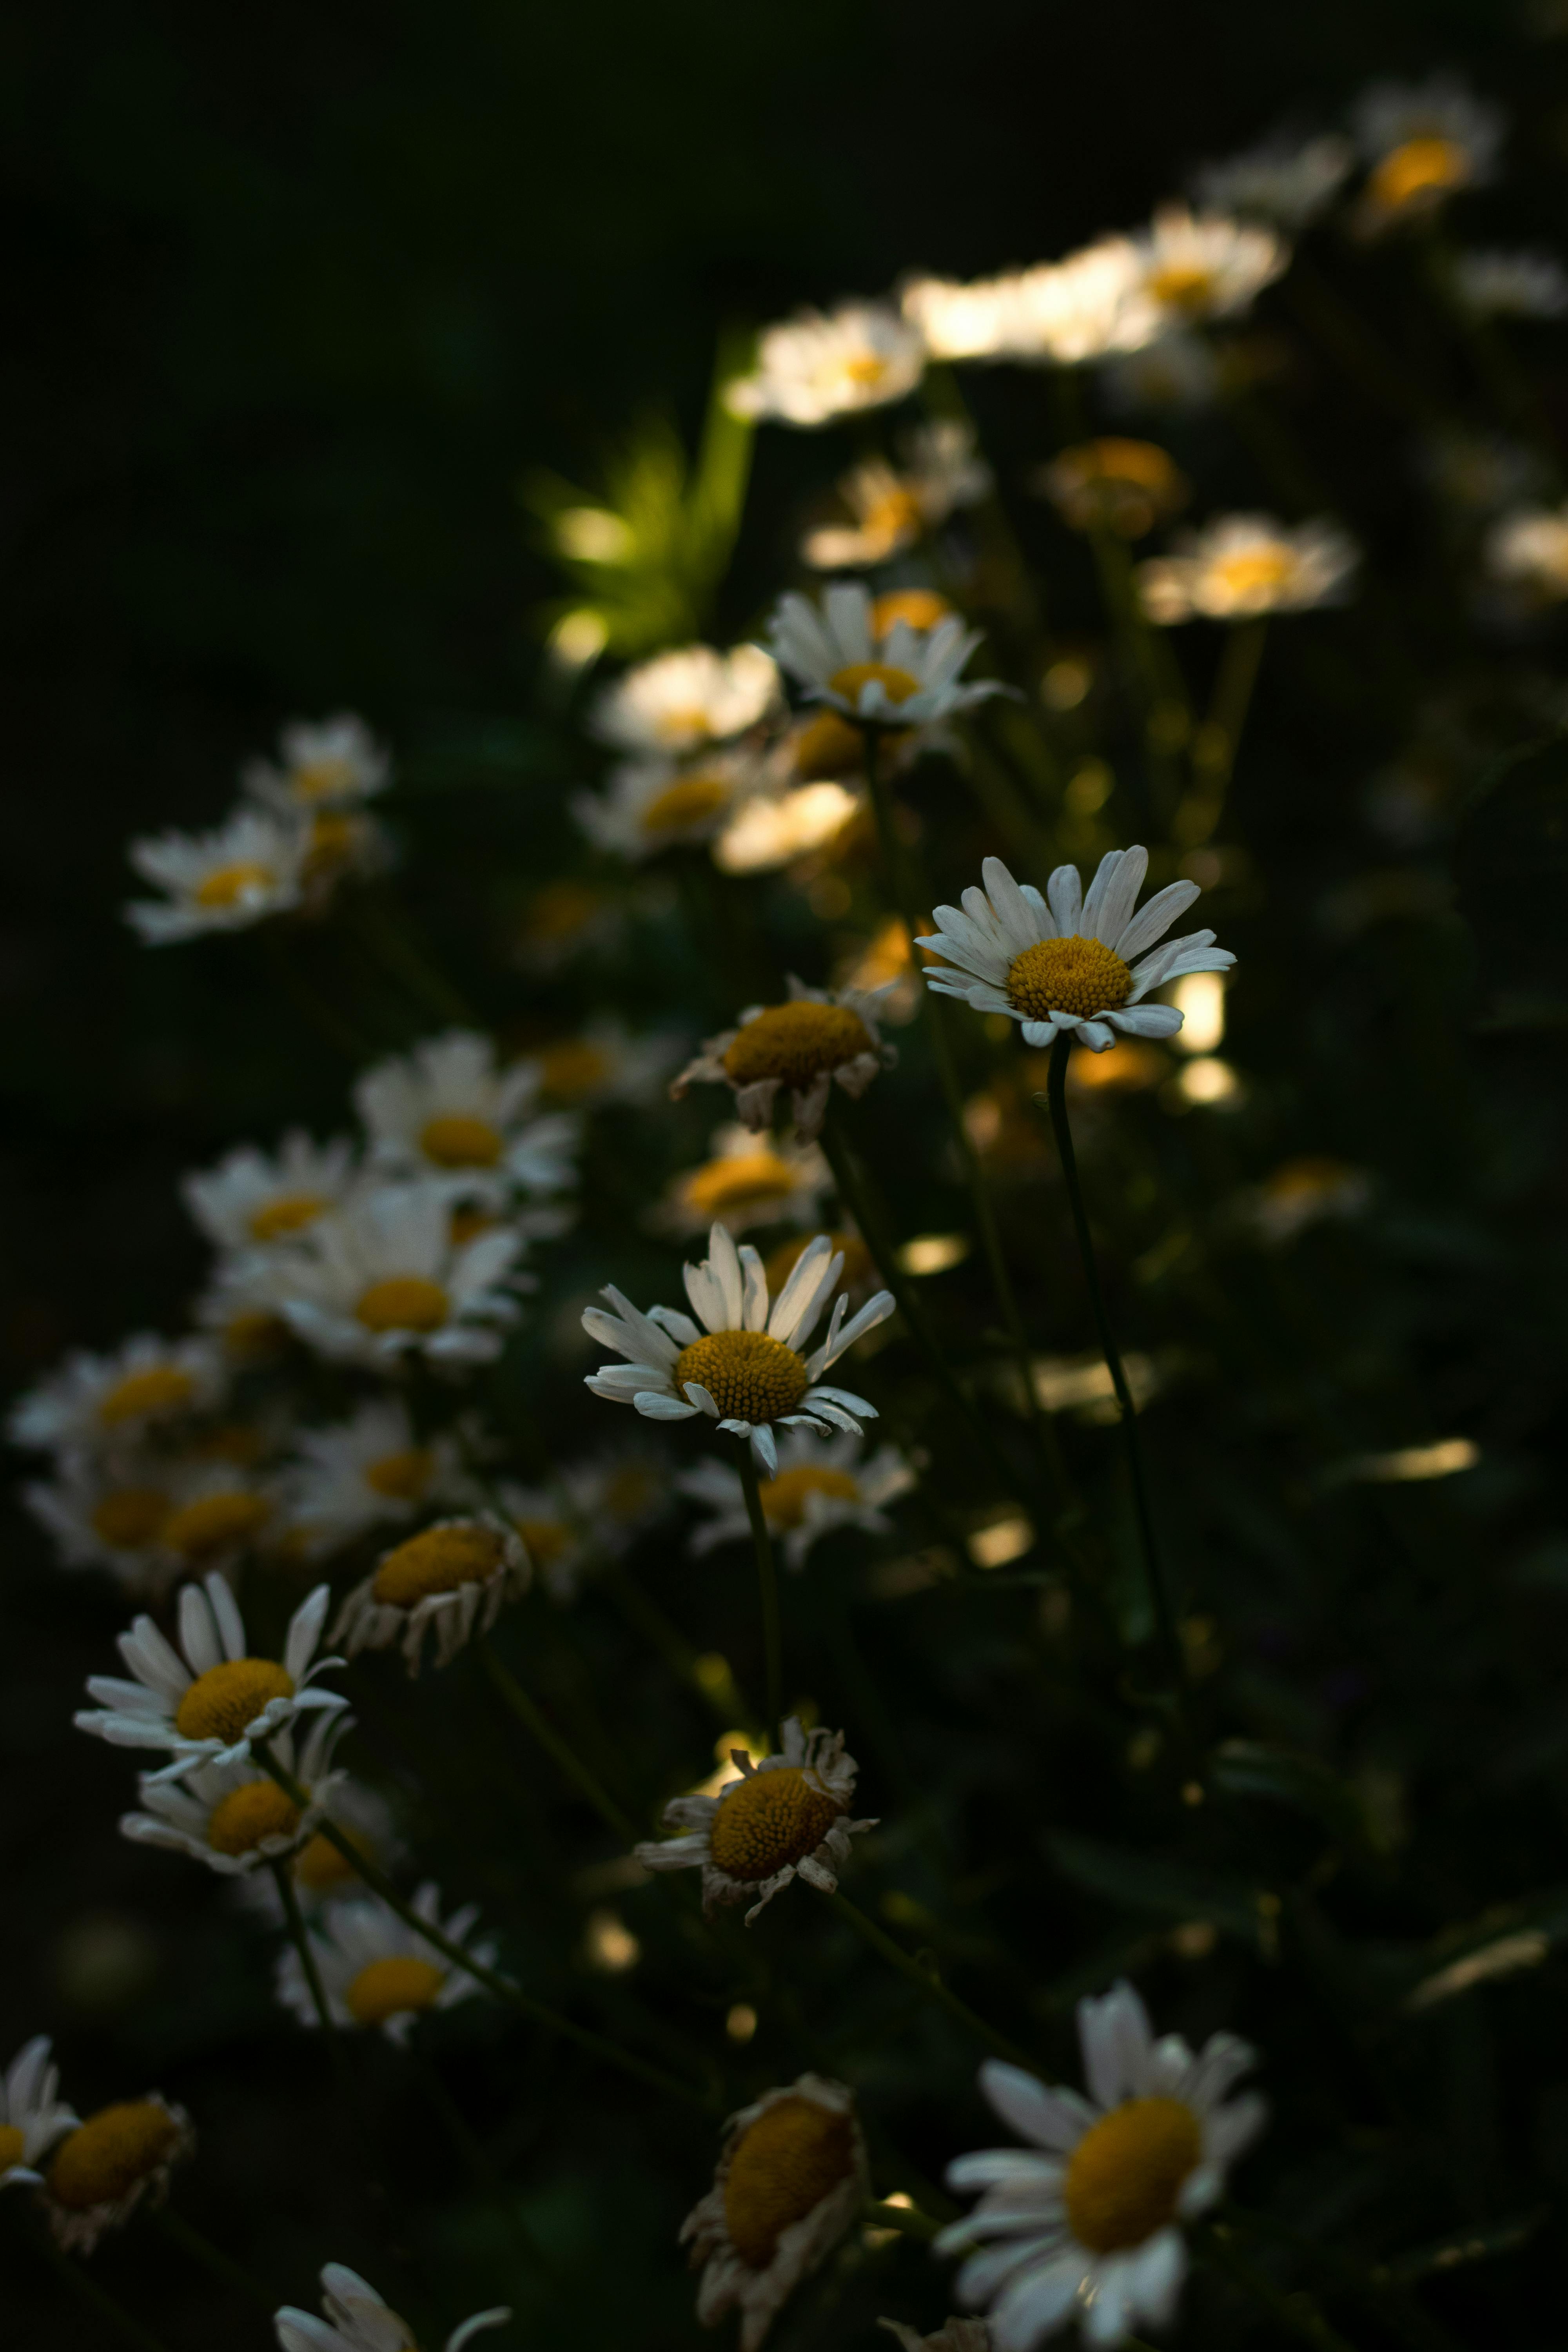 Hoa trắng gần gũi: Cùng tận hưởng sự gần gũi, dịu dàng với những bông hoa trắng tuyệt đẹp. Những hình ảnh này sẽ mang đến cho bạn cảm giác bình yên, tình tự và lãng mạn. Hãy dành chút thời gian để thưởng thức những giây phút đặc biệt này của bạn.